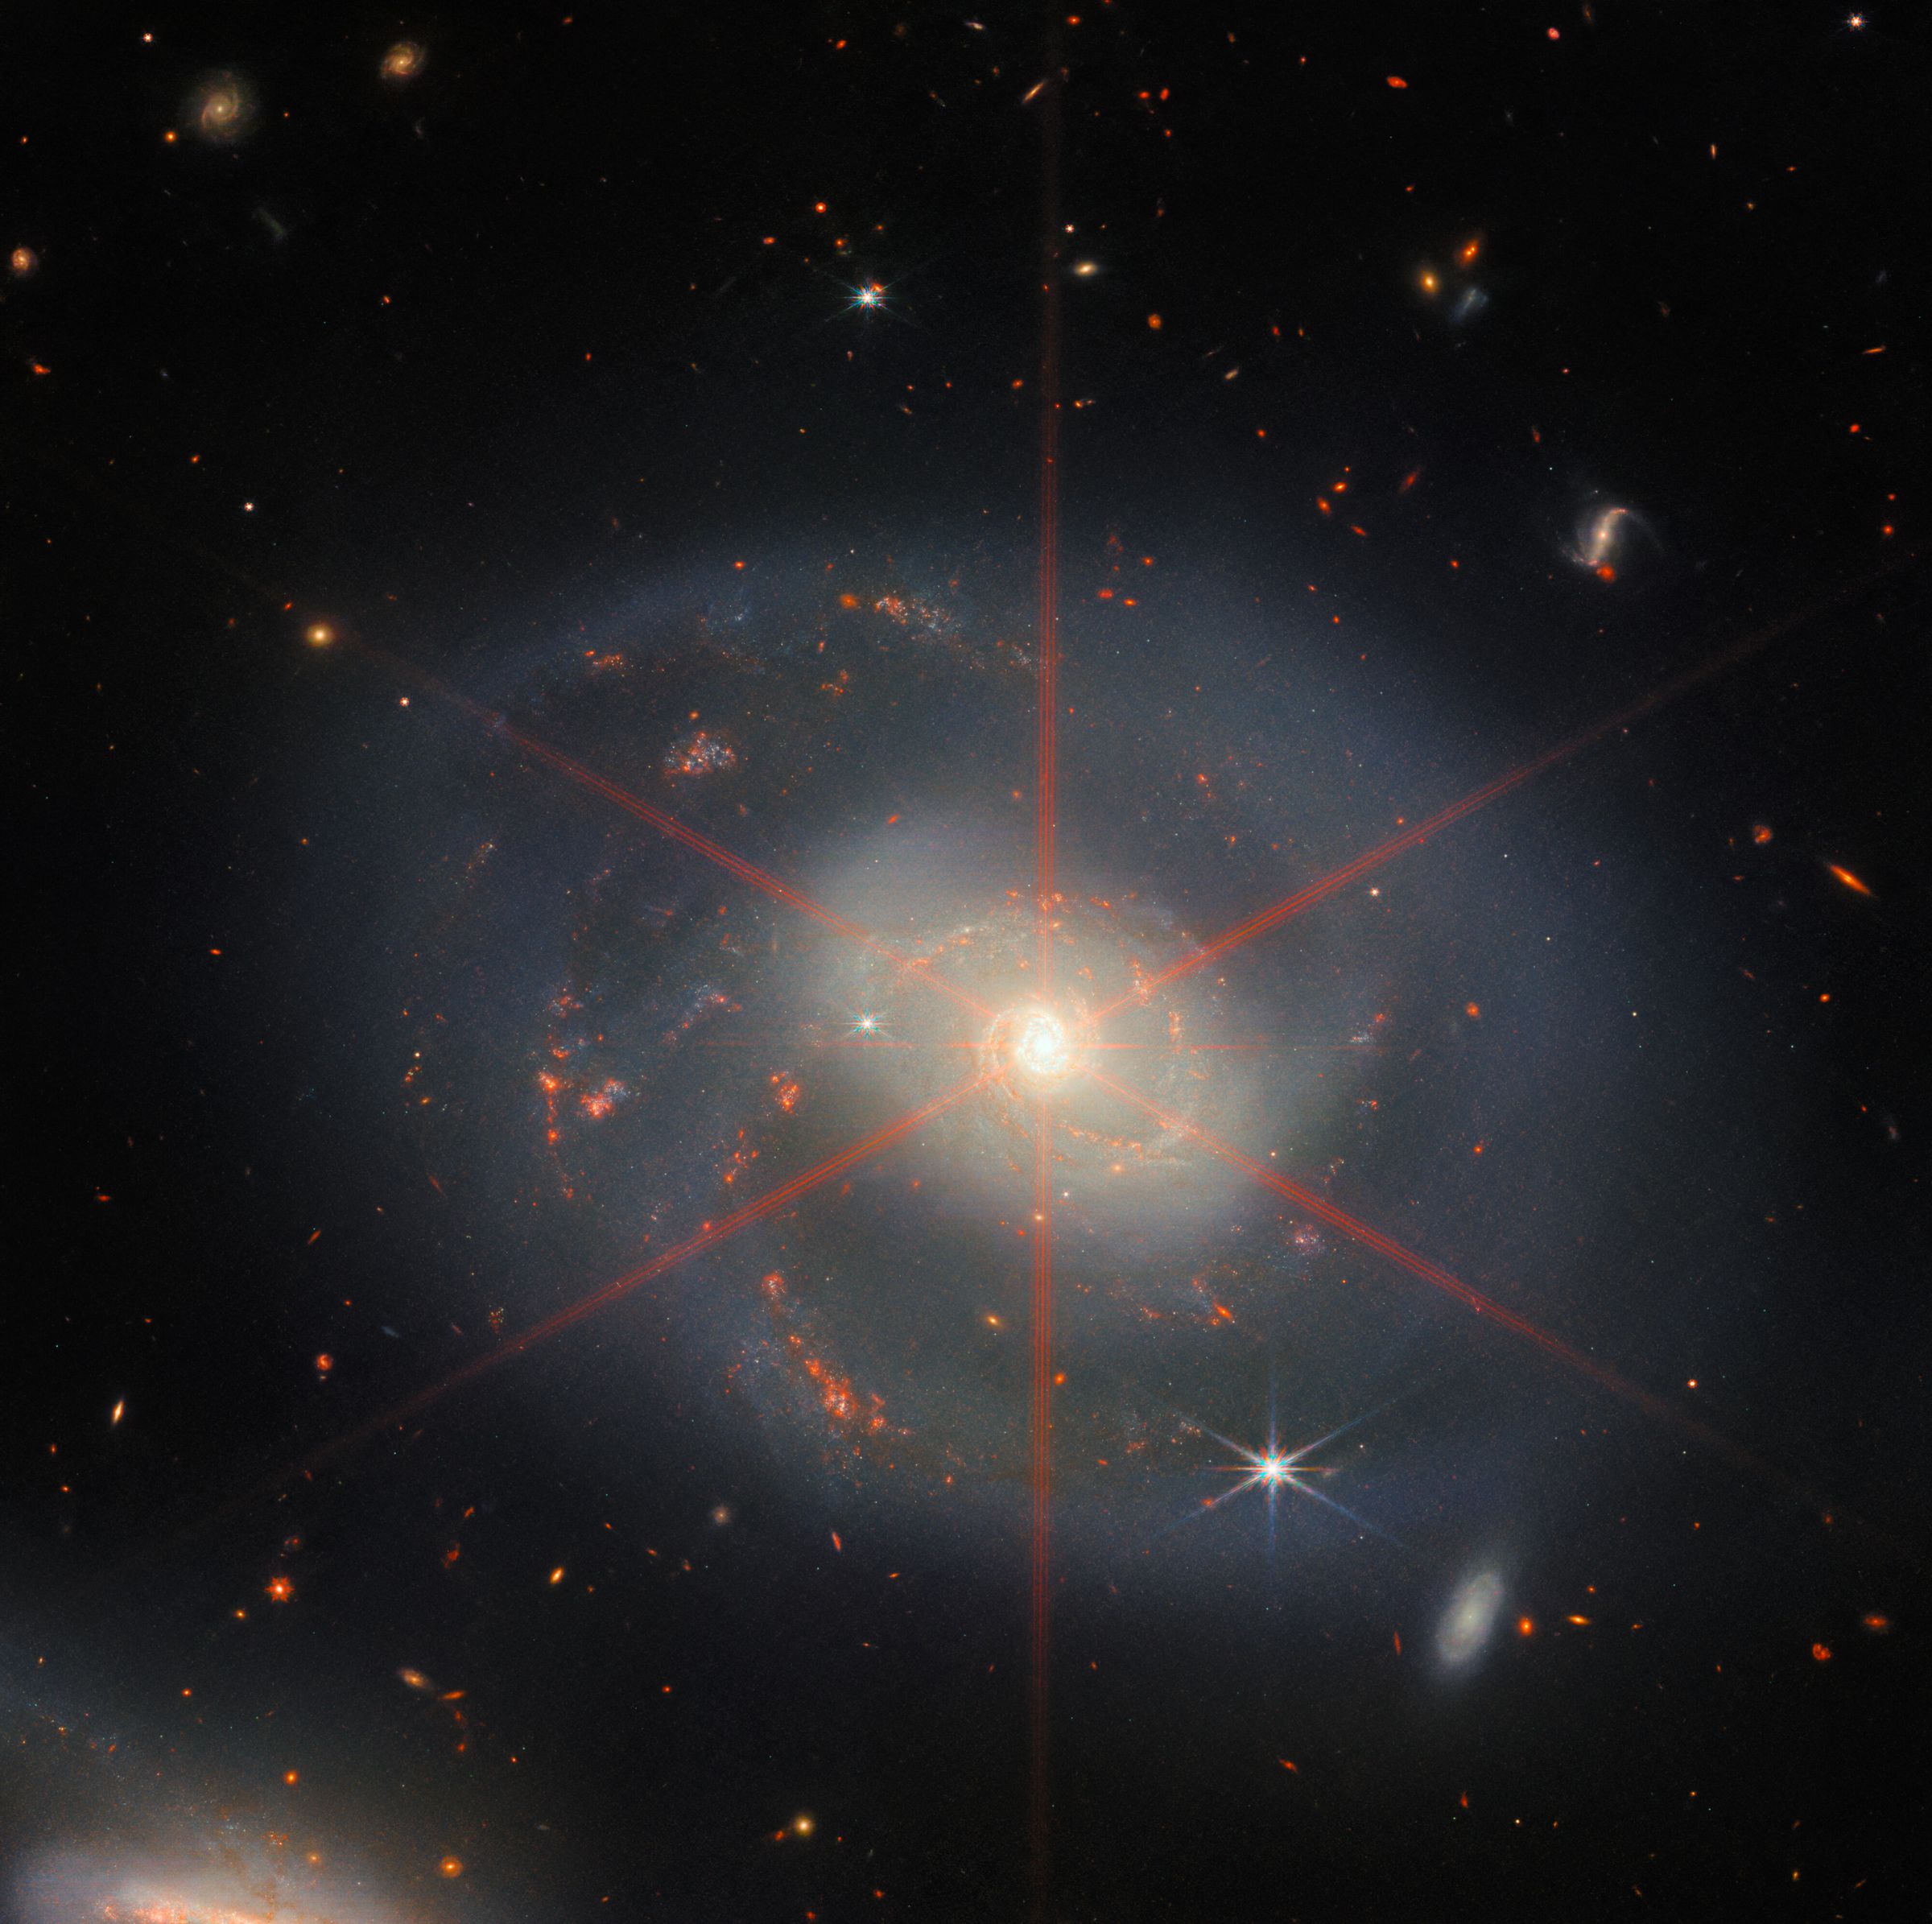 Hình ảnh này cho thấy một thiên hà xoắn ốc bị chi phối bởi một vùng trung tâm sáng.  Thiên hà có màu xanh tím với các vùng màu đỏ cam chứa đầy các ngôi sao.  Một gai nhiễu xạ lớn cũng có thể được nhìn thấy, xuất hiện dưới dạng một mô hình sao trên khu vực trung tâm của thiên hà.  Rất nhiều ngôi sao và thiên hà lấp đầy khung cảnh nền